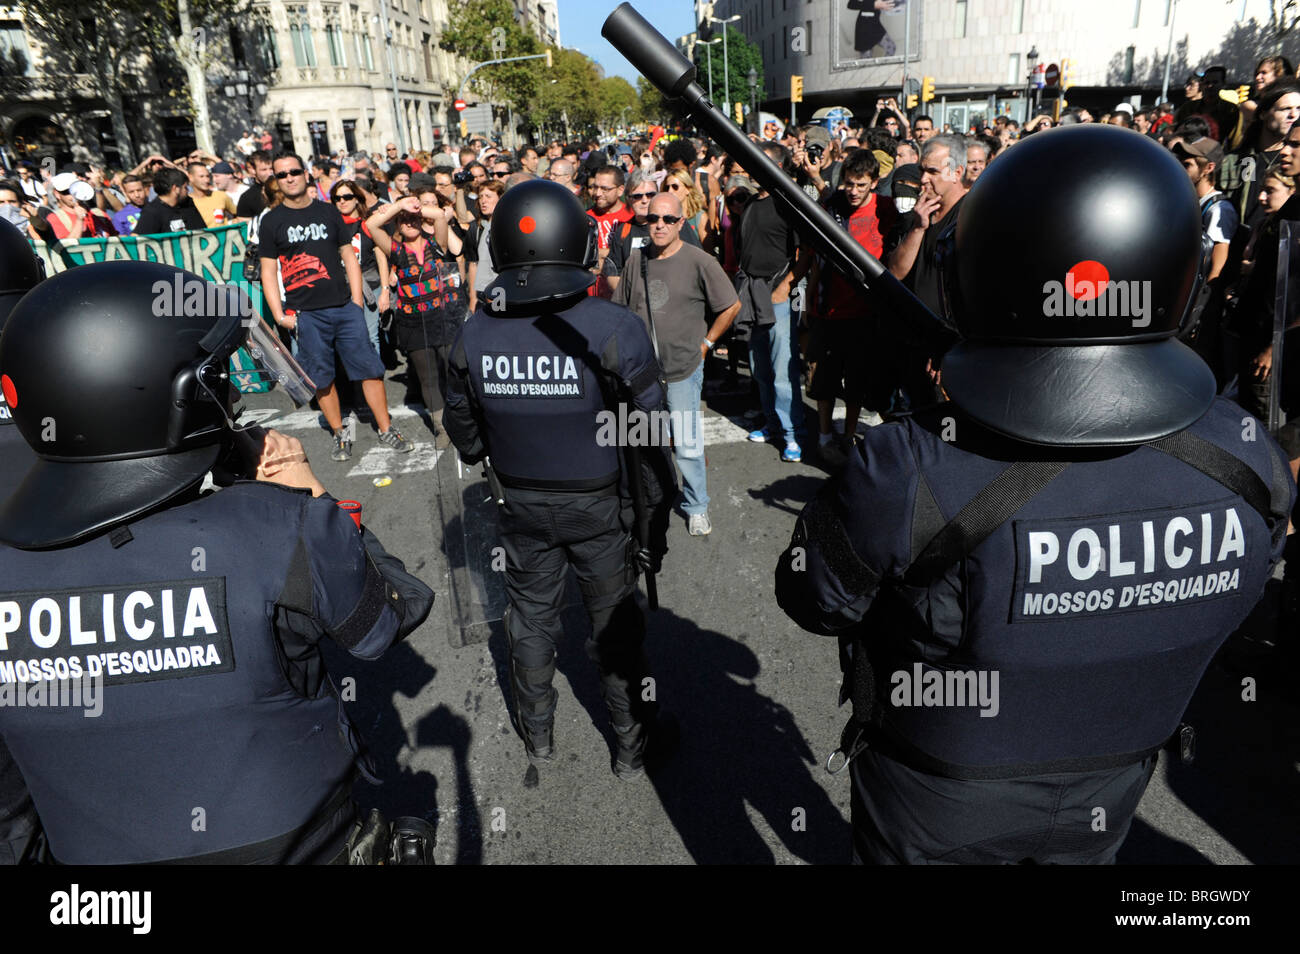 Les manifestants font face à la police anti-émeute anti dans les affrontements dans le centre-ville au cours de la grève générale à Barcelone.L'Espagne. Banque D'Images